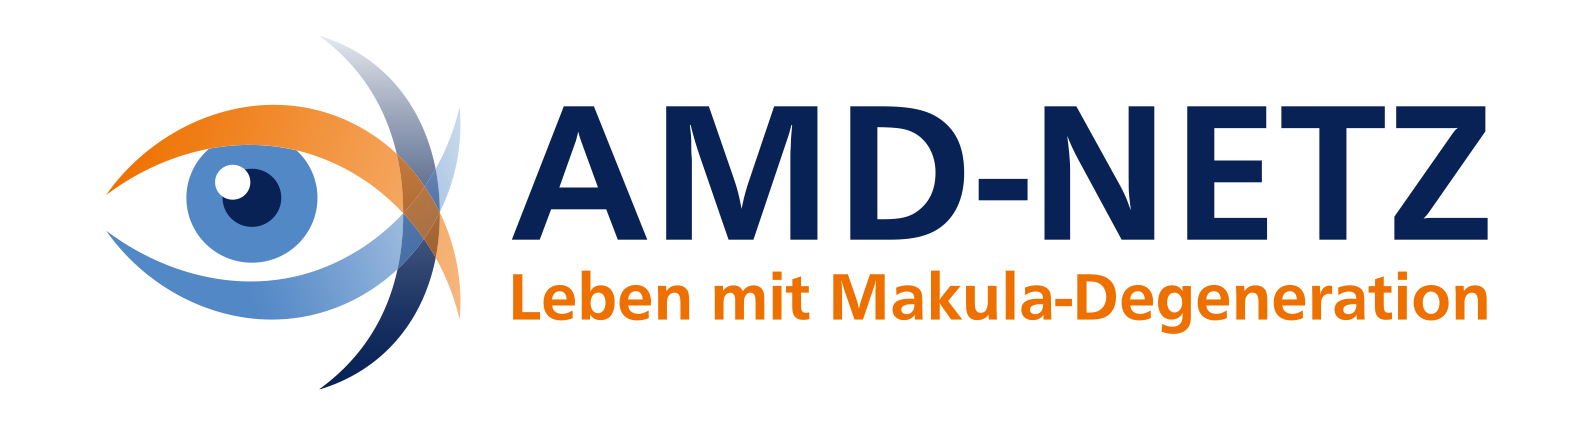 Das Bild zeigt das Logo des AMD Netzes